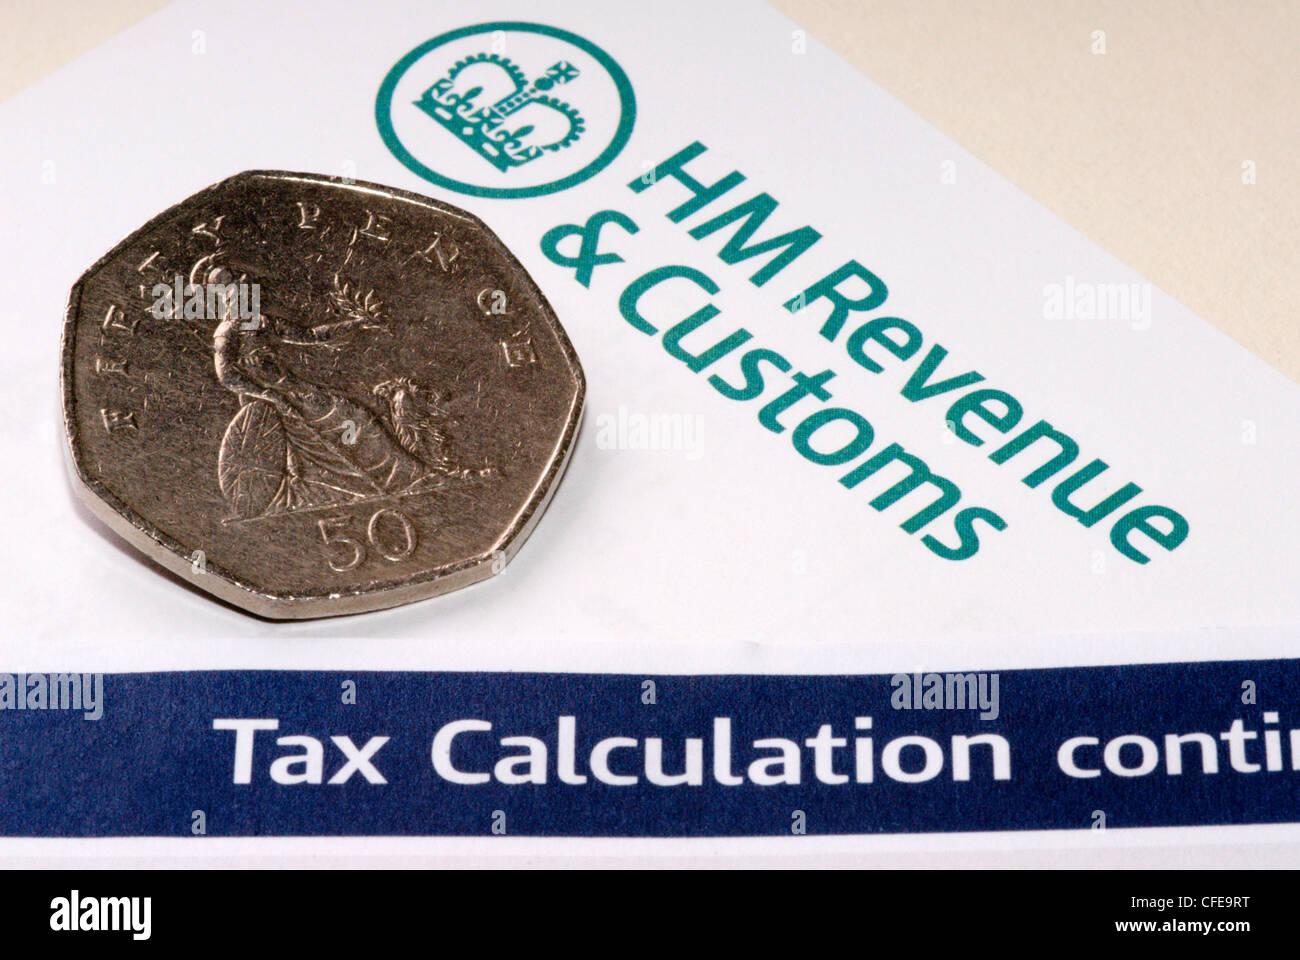 Allgemeines Bild von 50 Cent-Stück und das HMRC-Logo, um die fünfzig Pence Steuersatz zu veranschaulichen Stockfoto